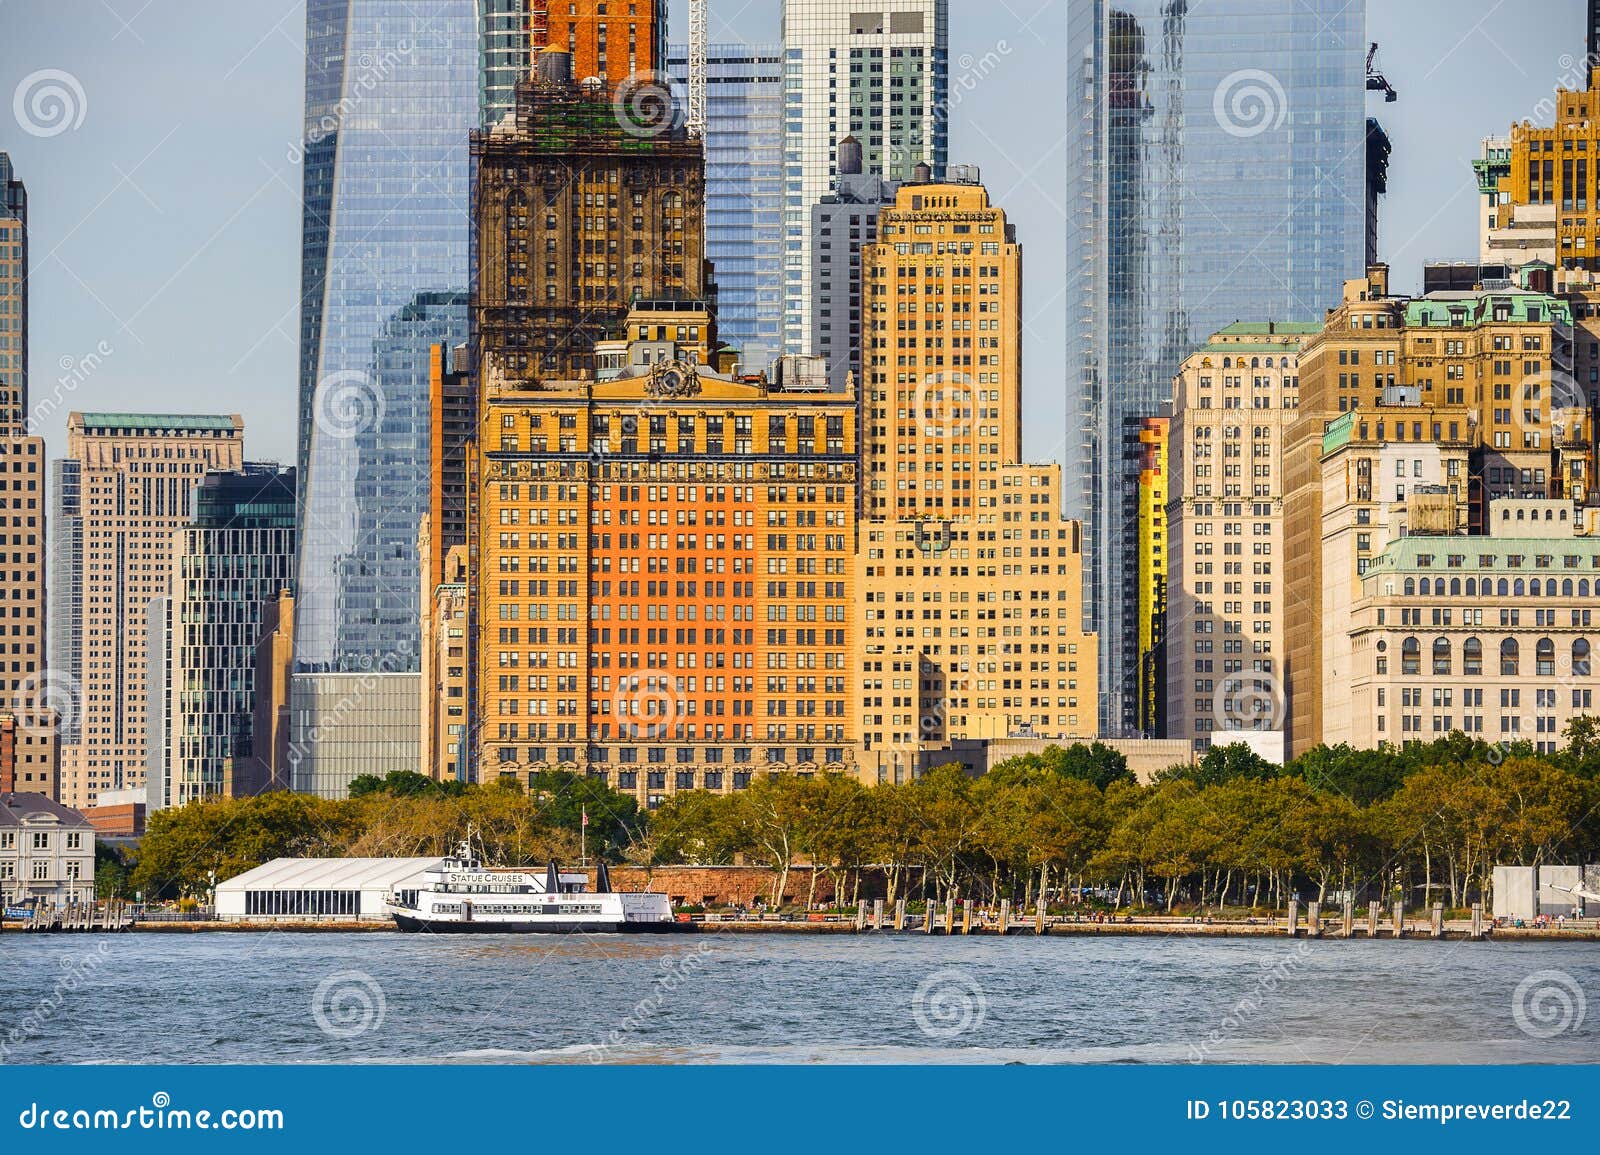 Architektur von Manhattan, New York, USA. NEW YORK, USA - 25. SEPTEMBER 2015: Architektur von Manhattan, New York City, USA New York ist die einwohnerstarkste Stadt in den Vereinigten Staaten